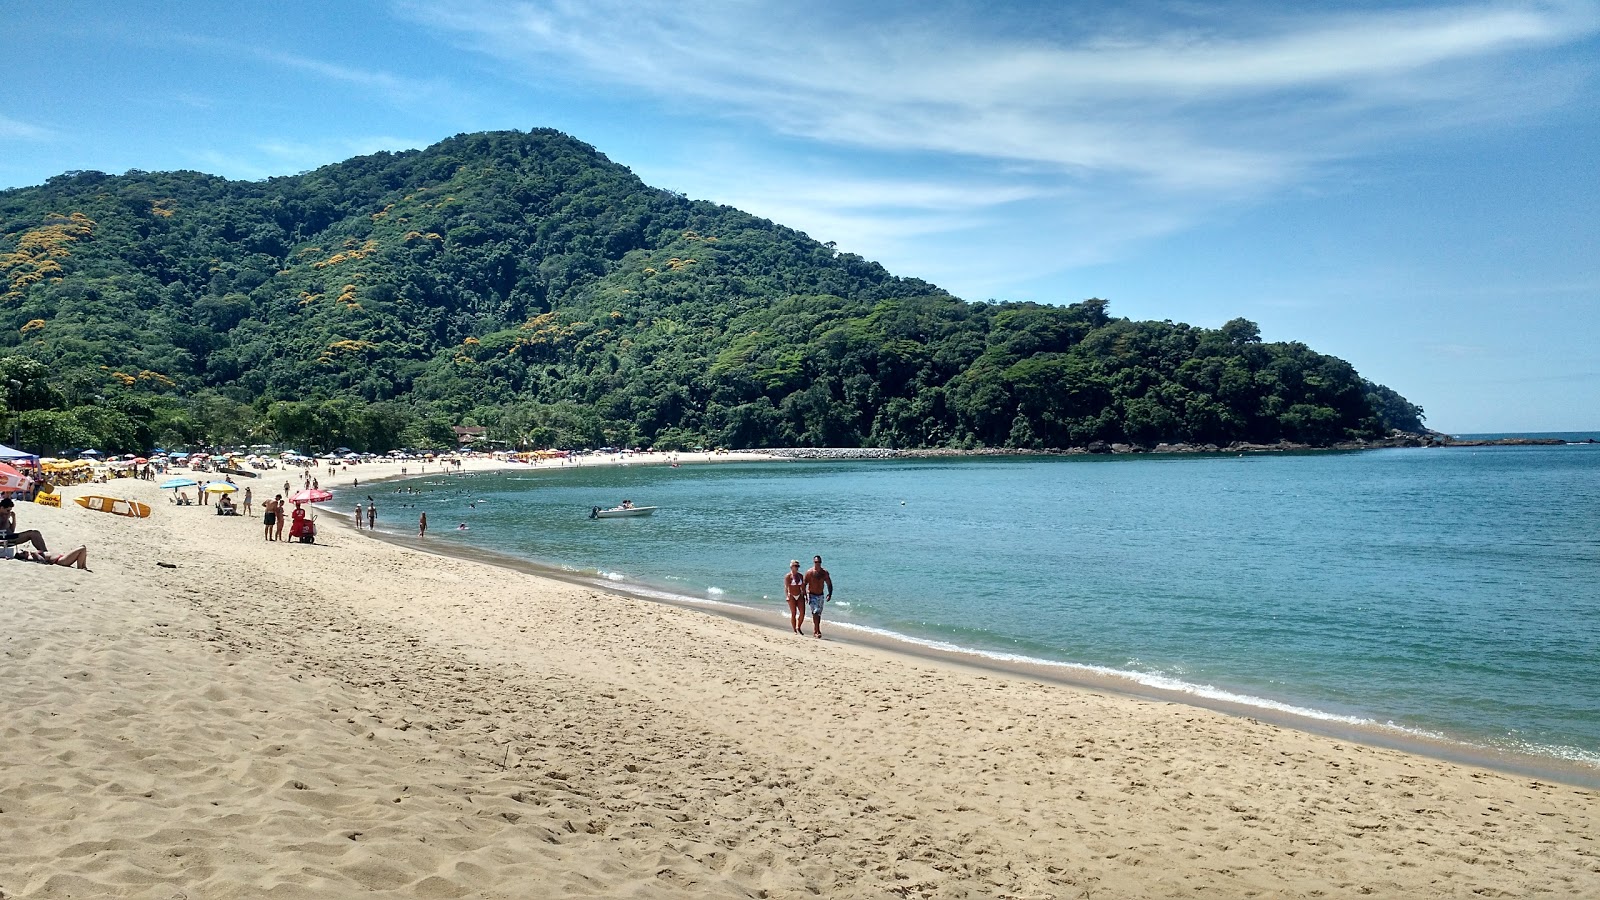 Fotografie cu Plaja Boicucanga cu o suprafață de nisip strălucitor